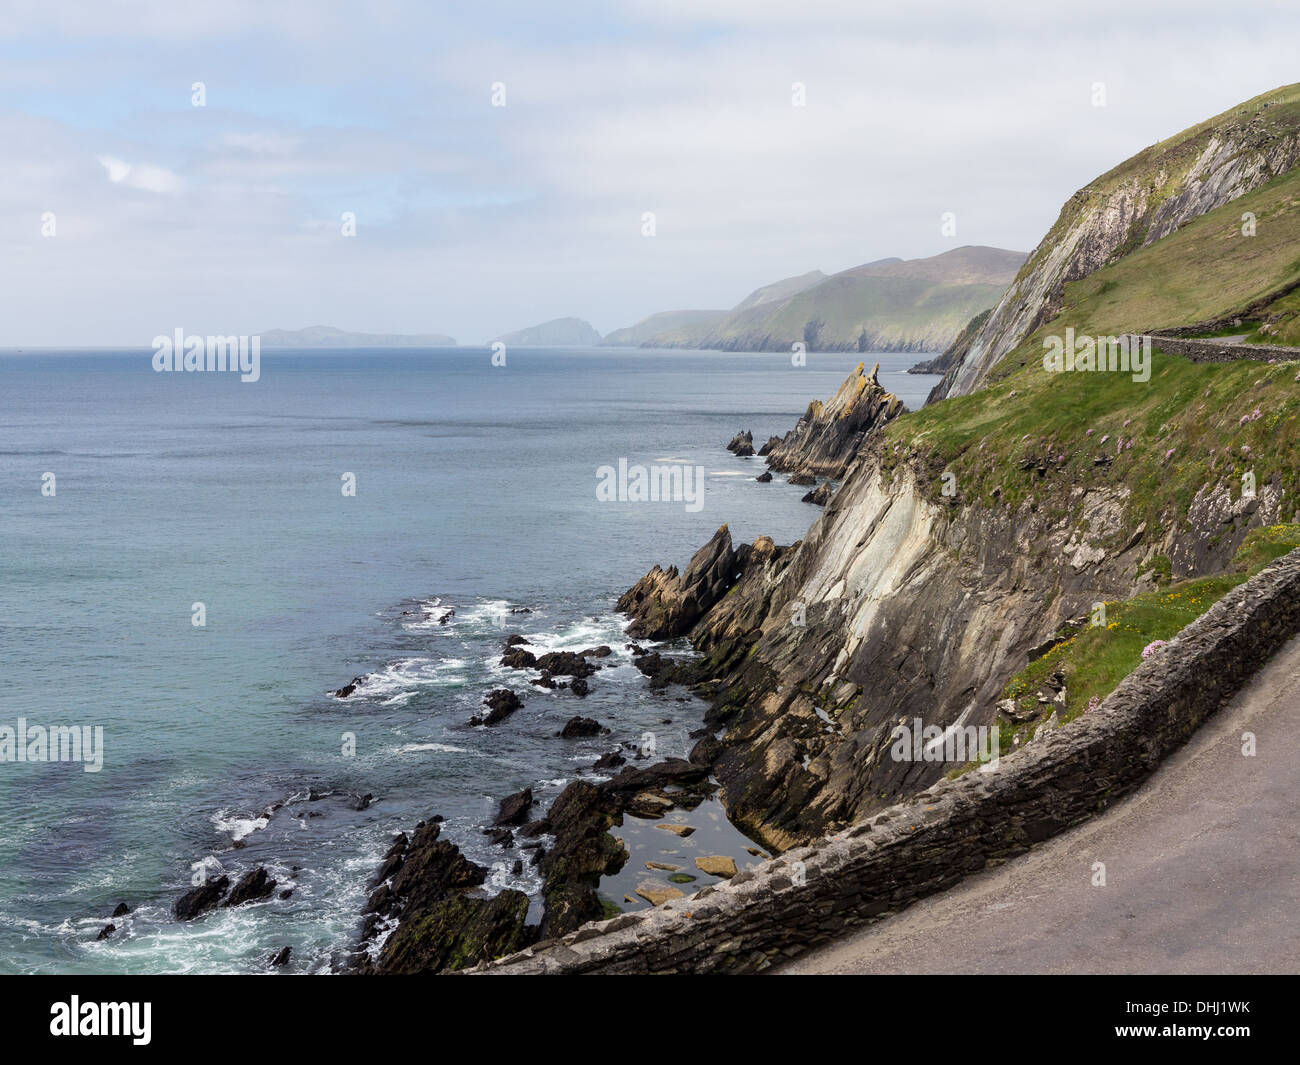 La península Dingle, vista a lo largo de la costa de la punta oeste del condado de Kerry, cerca de Dingle en Irlanda o Eire Foto de stock